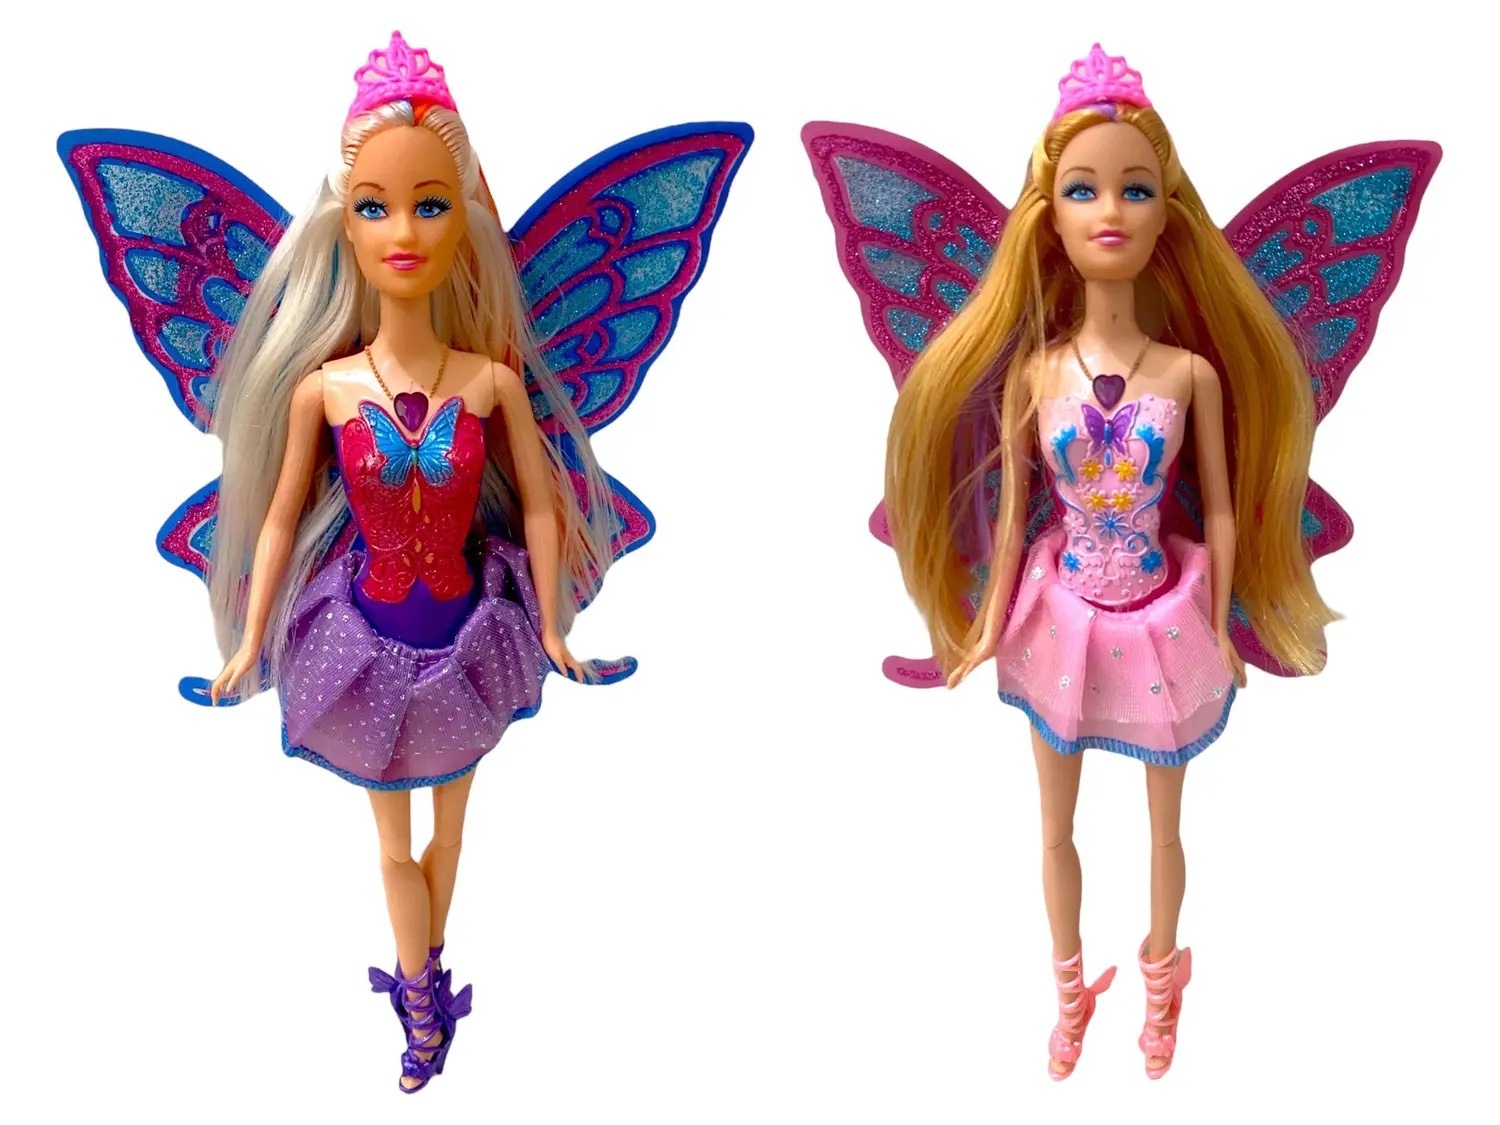 Boneca borboleta linda estilo barbie